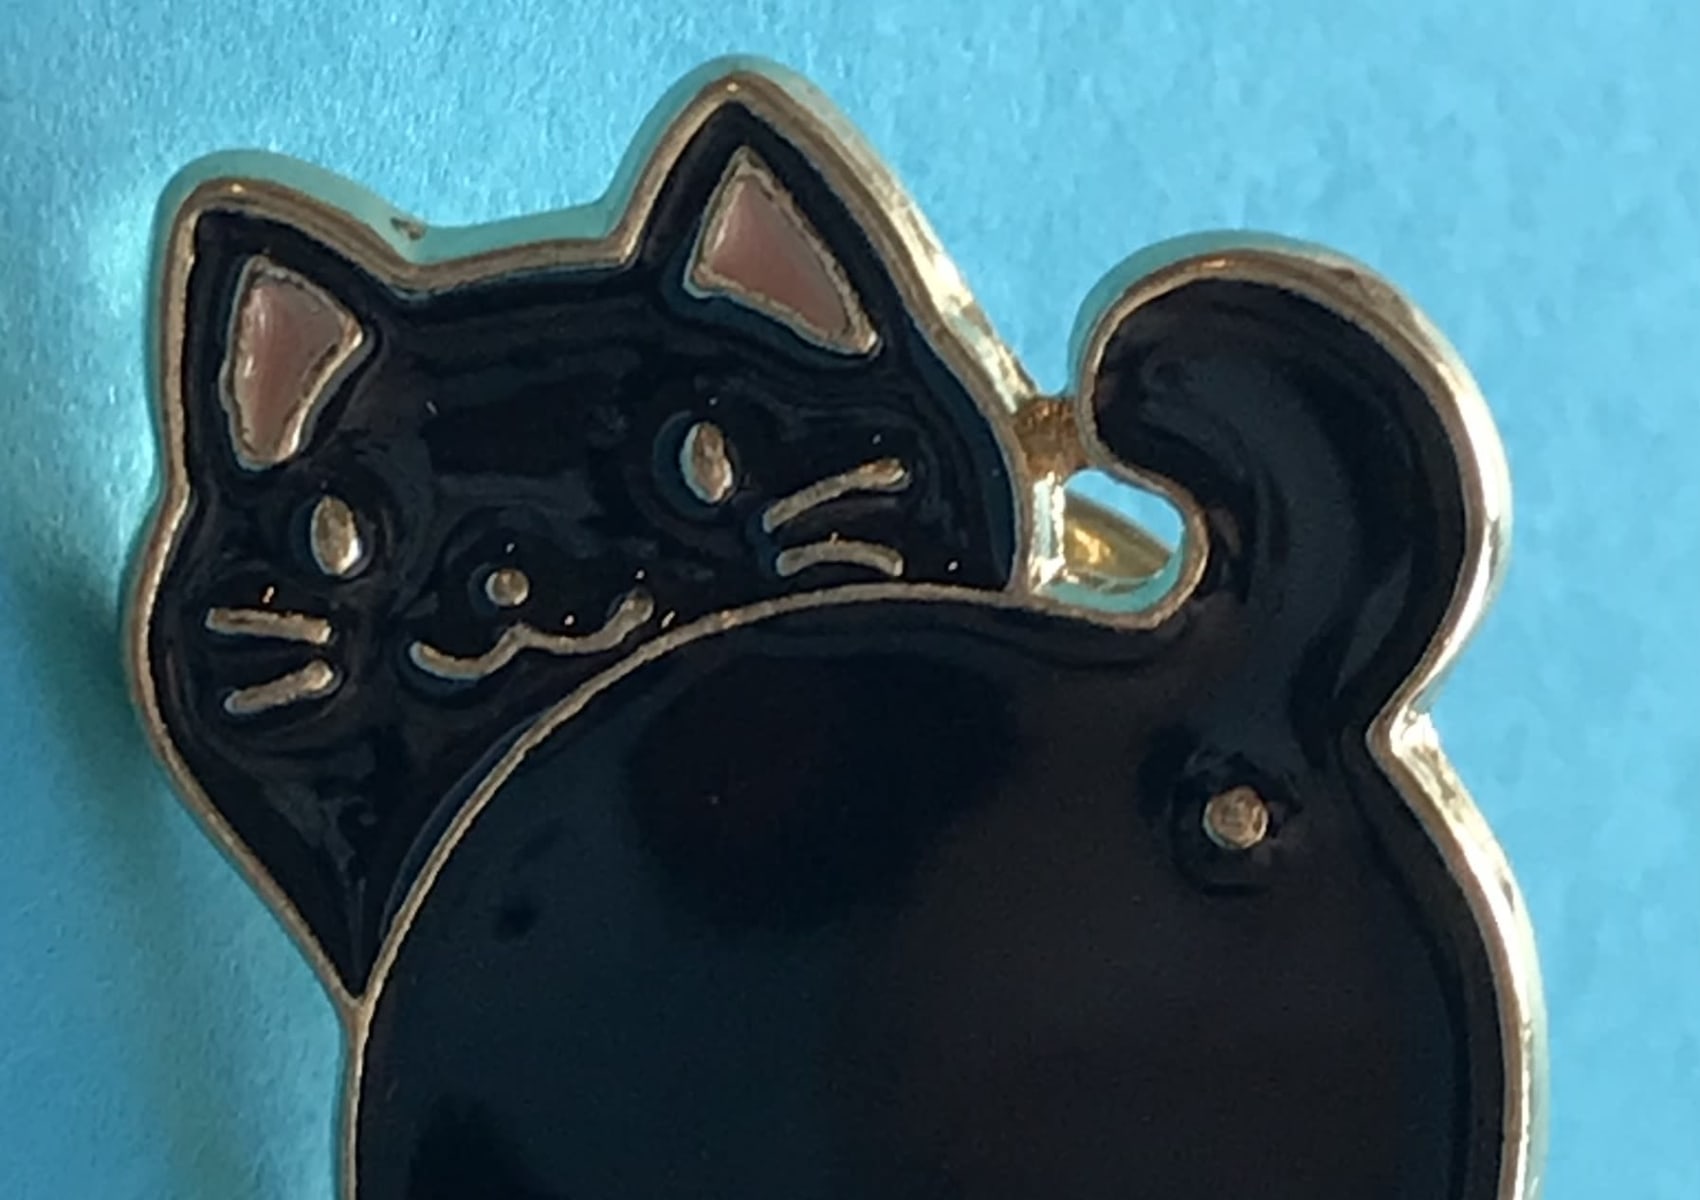 Cute black cat pin badge